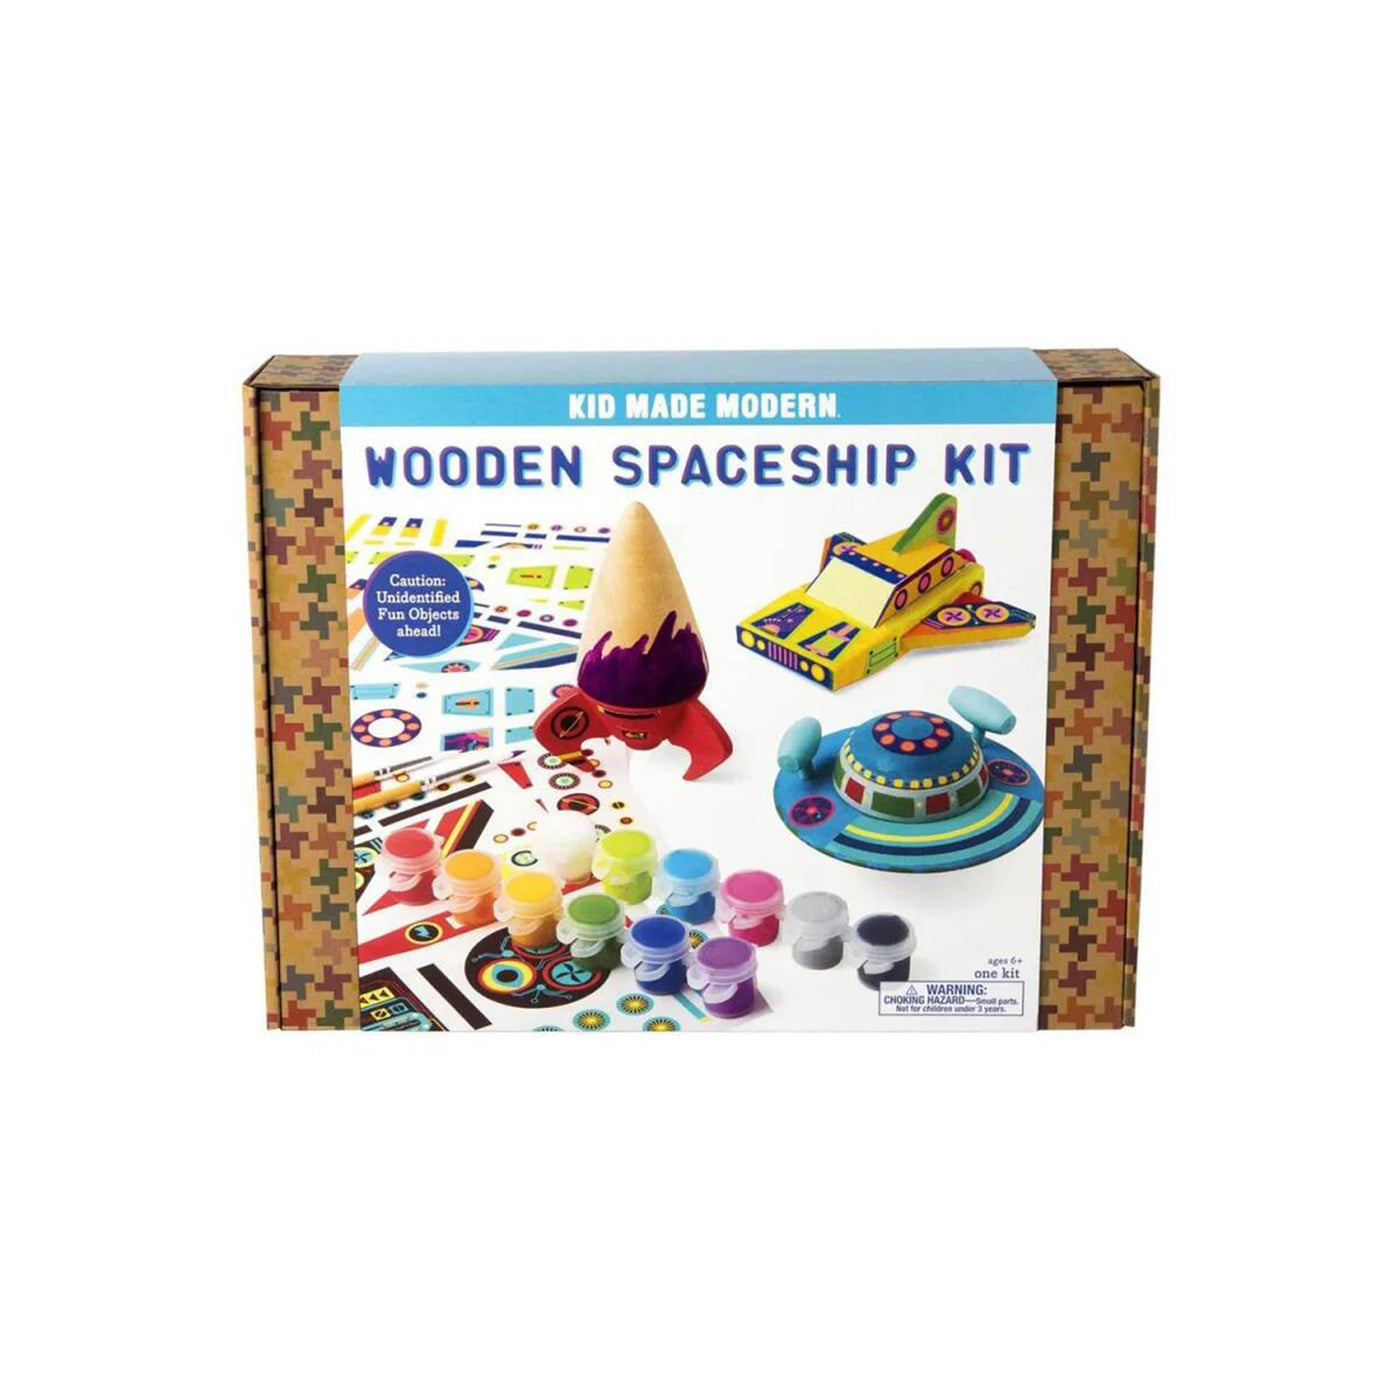 Wooden Spaceship Kit